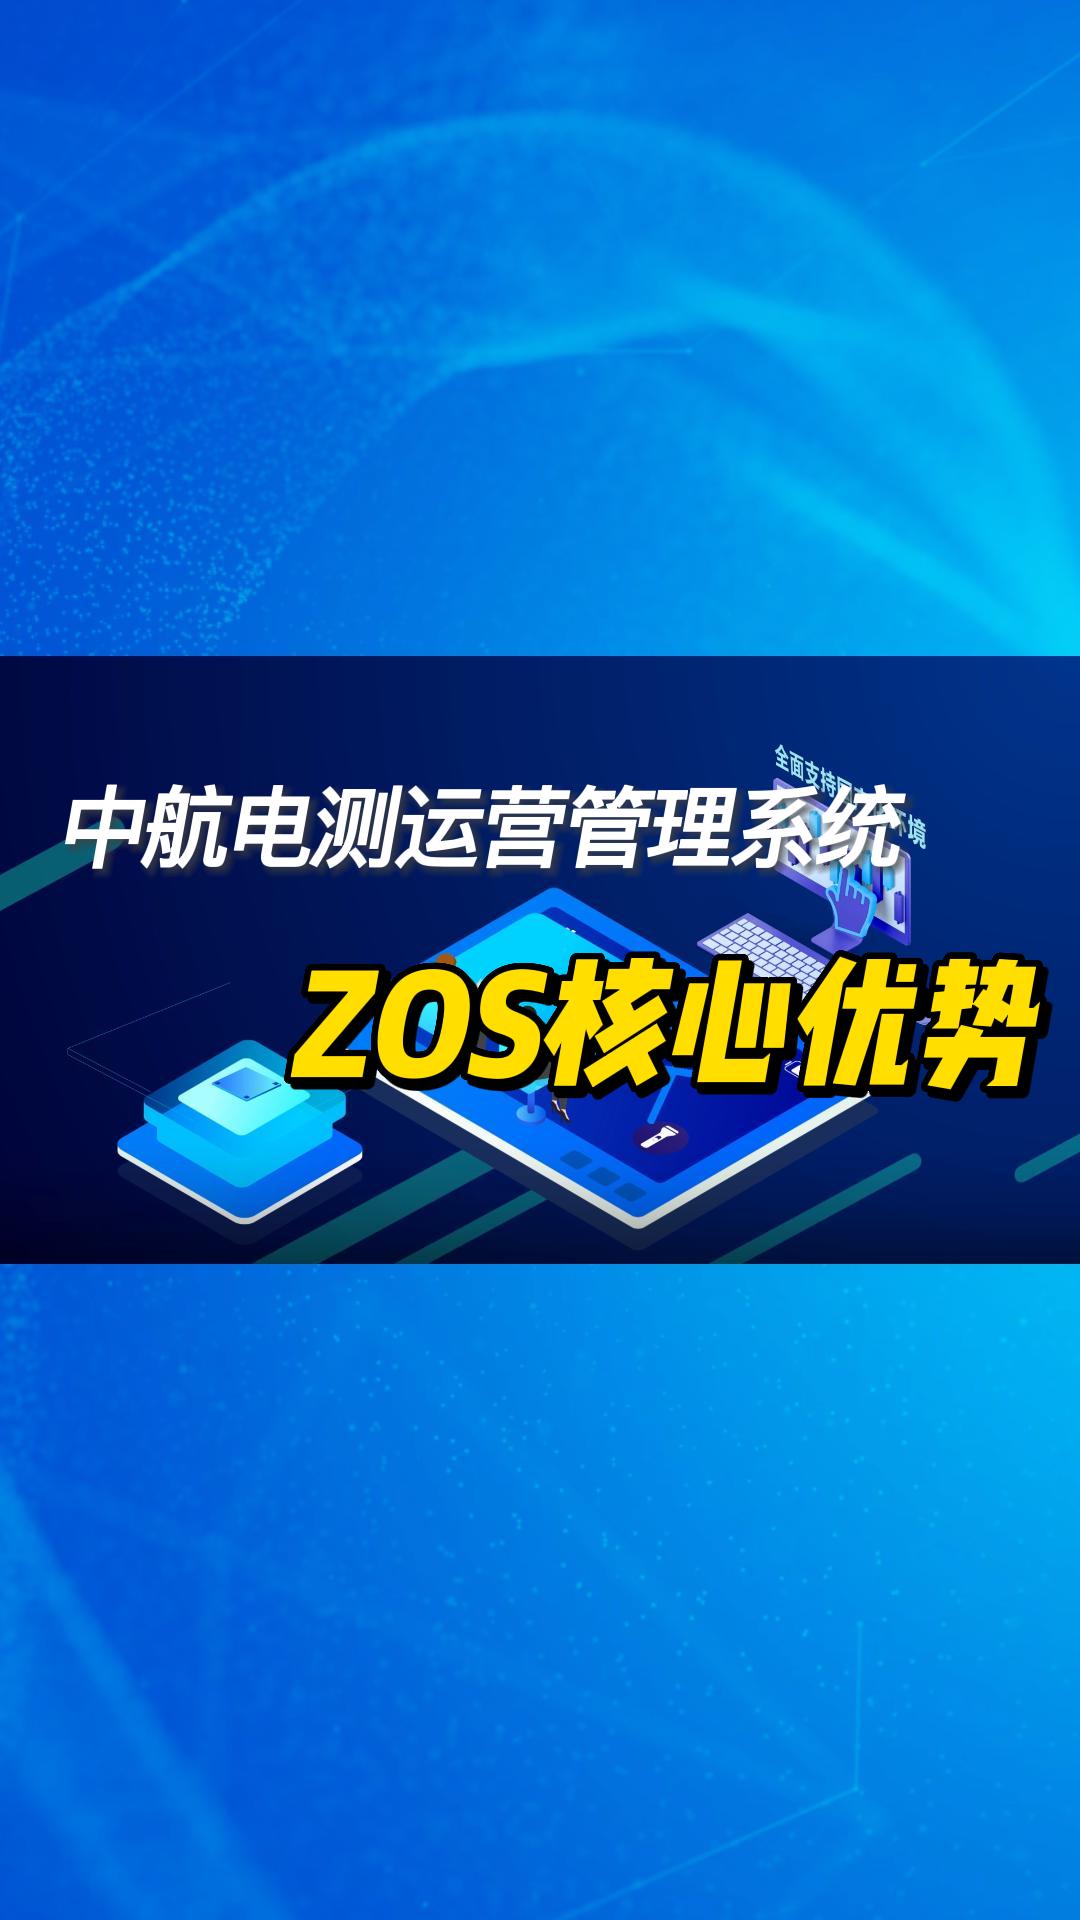 中航電測ZOS管理系統 #數字化轉型 